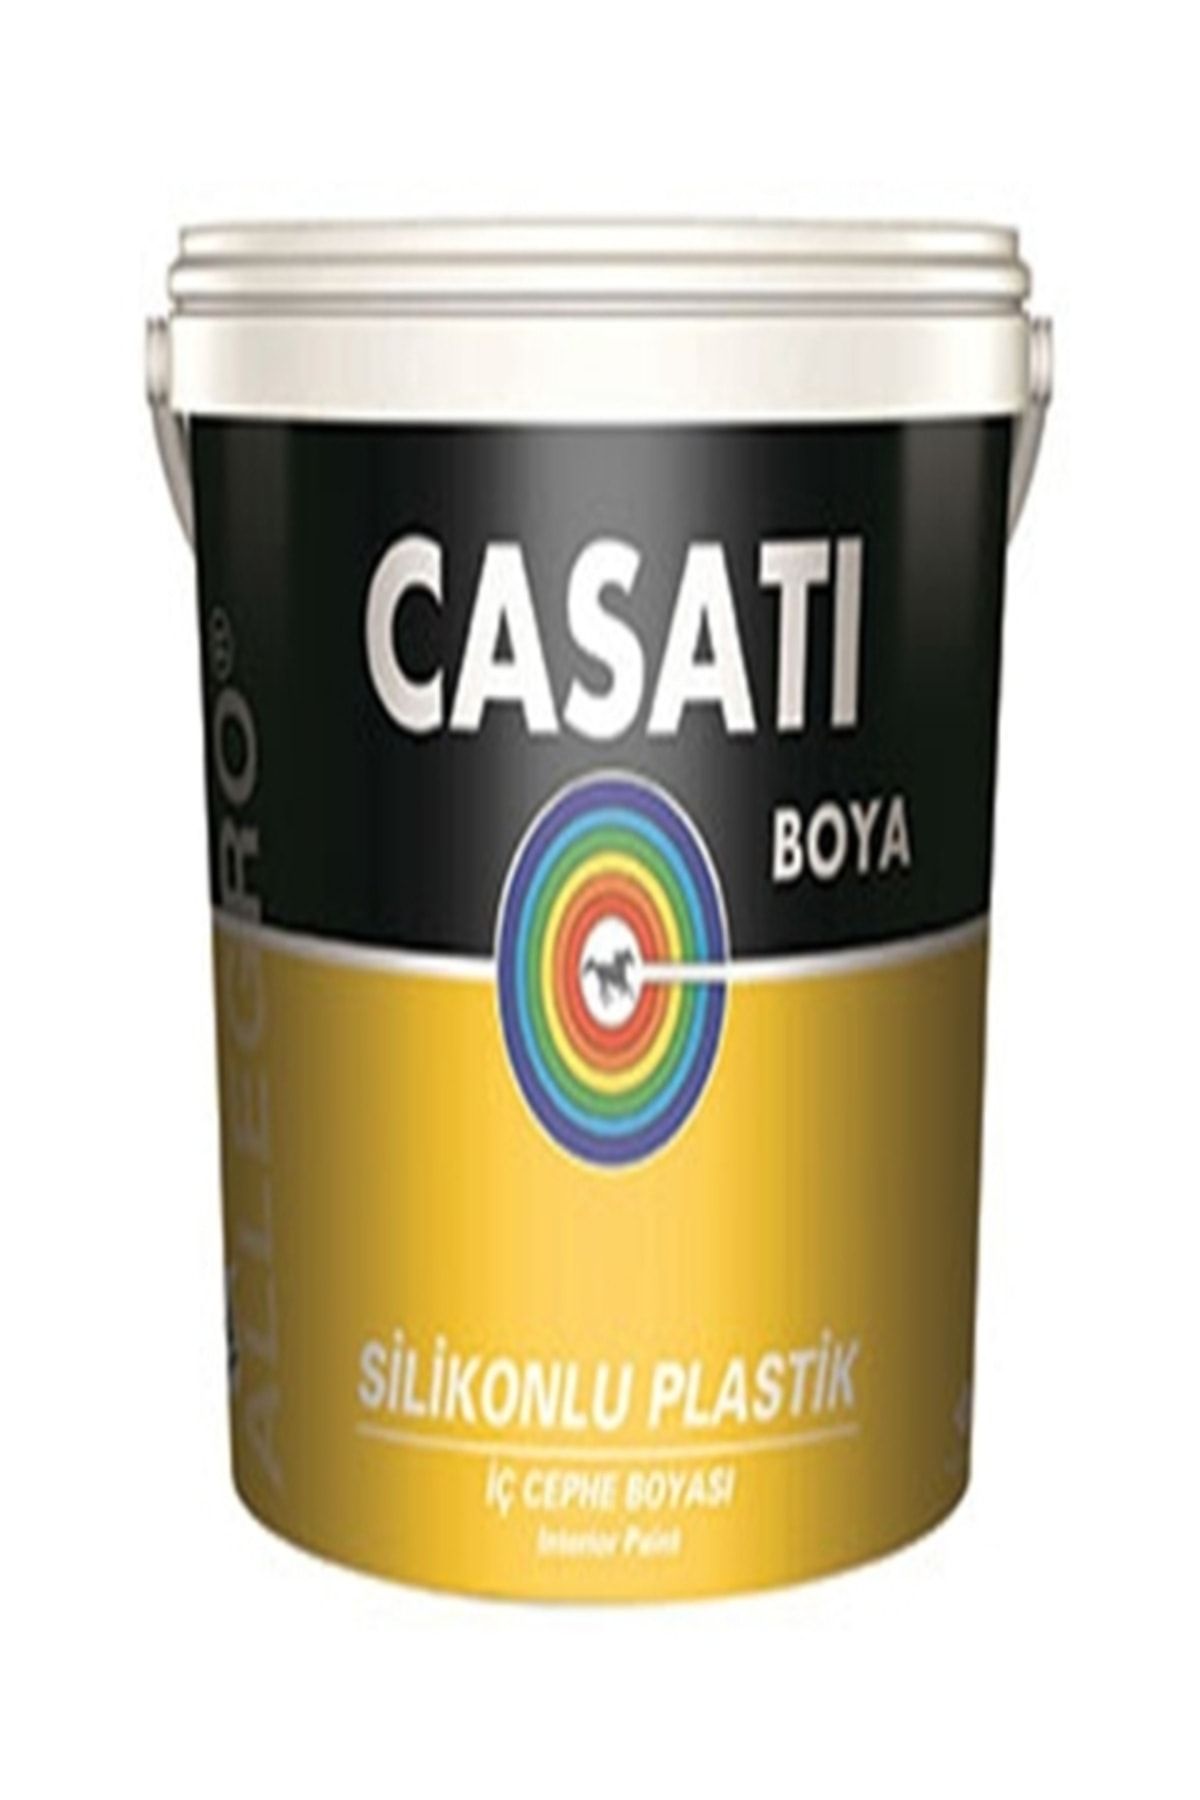 Casati Dyo Allegro Silikonlu Plastik 10 Kg Iç Cephe Boyası